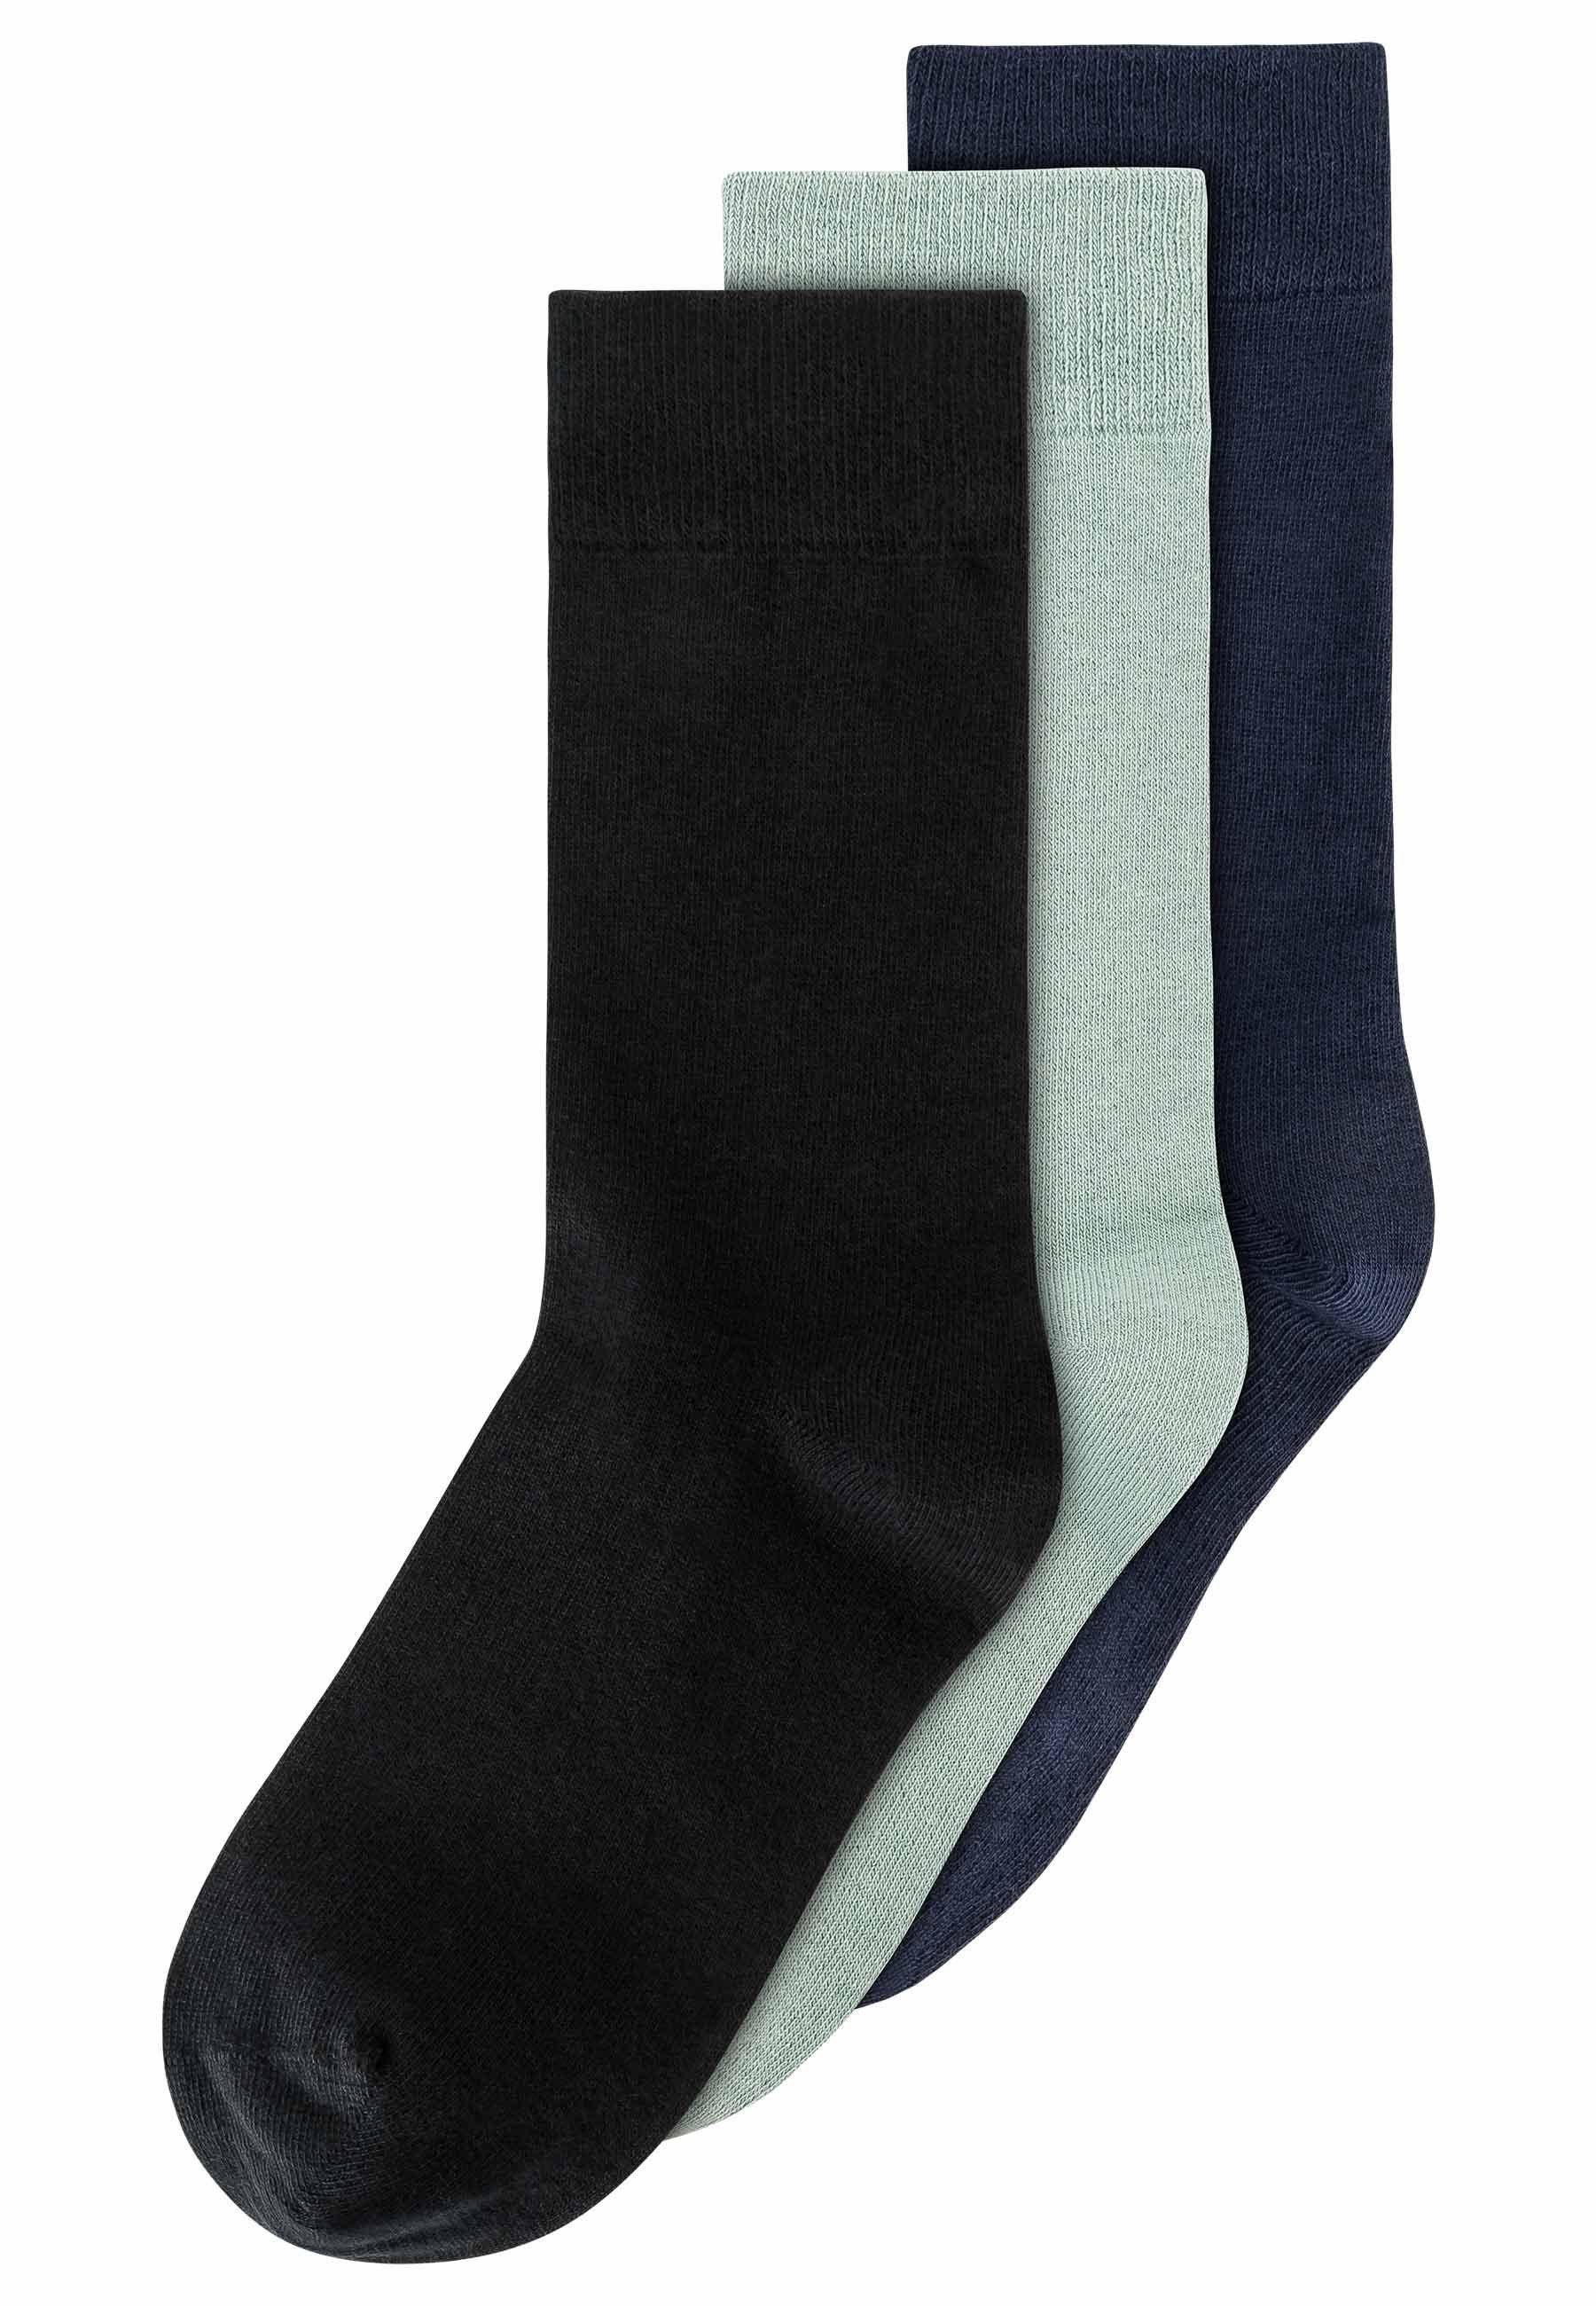 MELA Socken Socken 3er mint Pack Basic / / navy schwarz